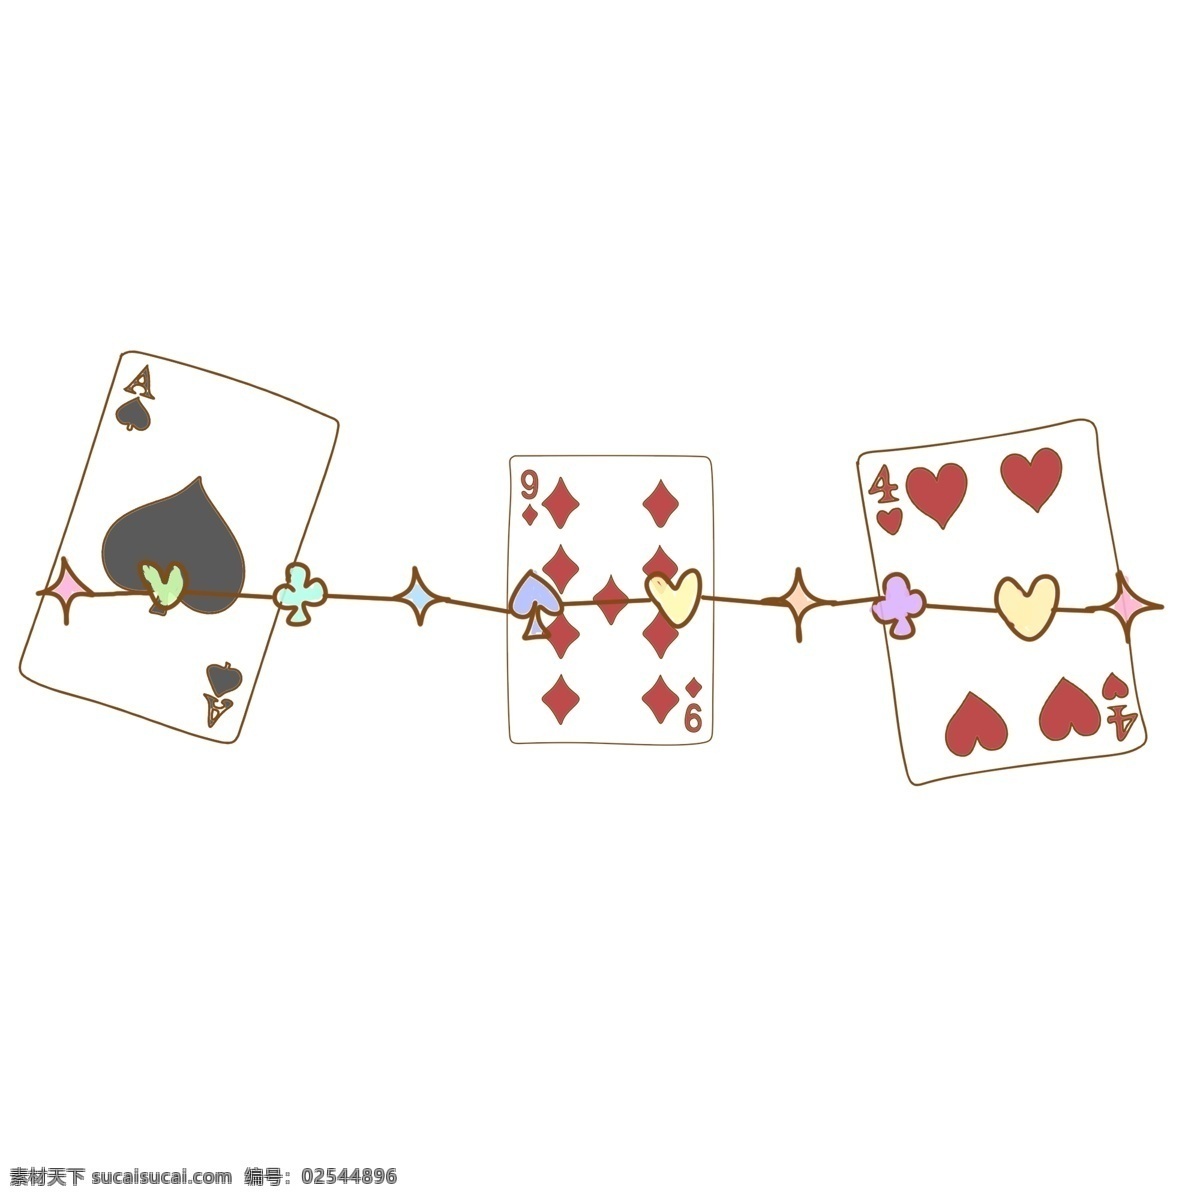 扑克牌 分割线 插画 扑克牌分割线 创意分割线 精美分割线 爱心分割线 立体分割线 分割线装饰